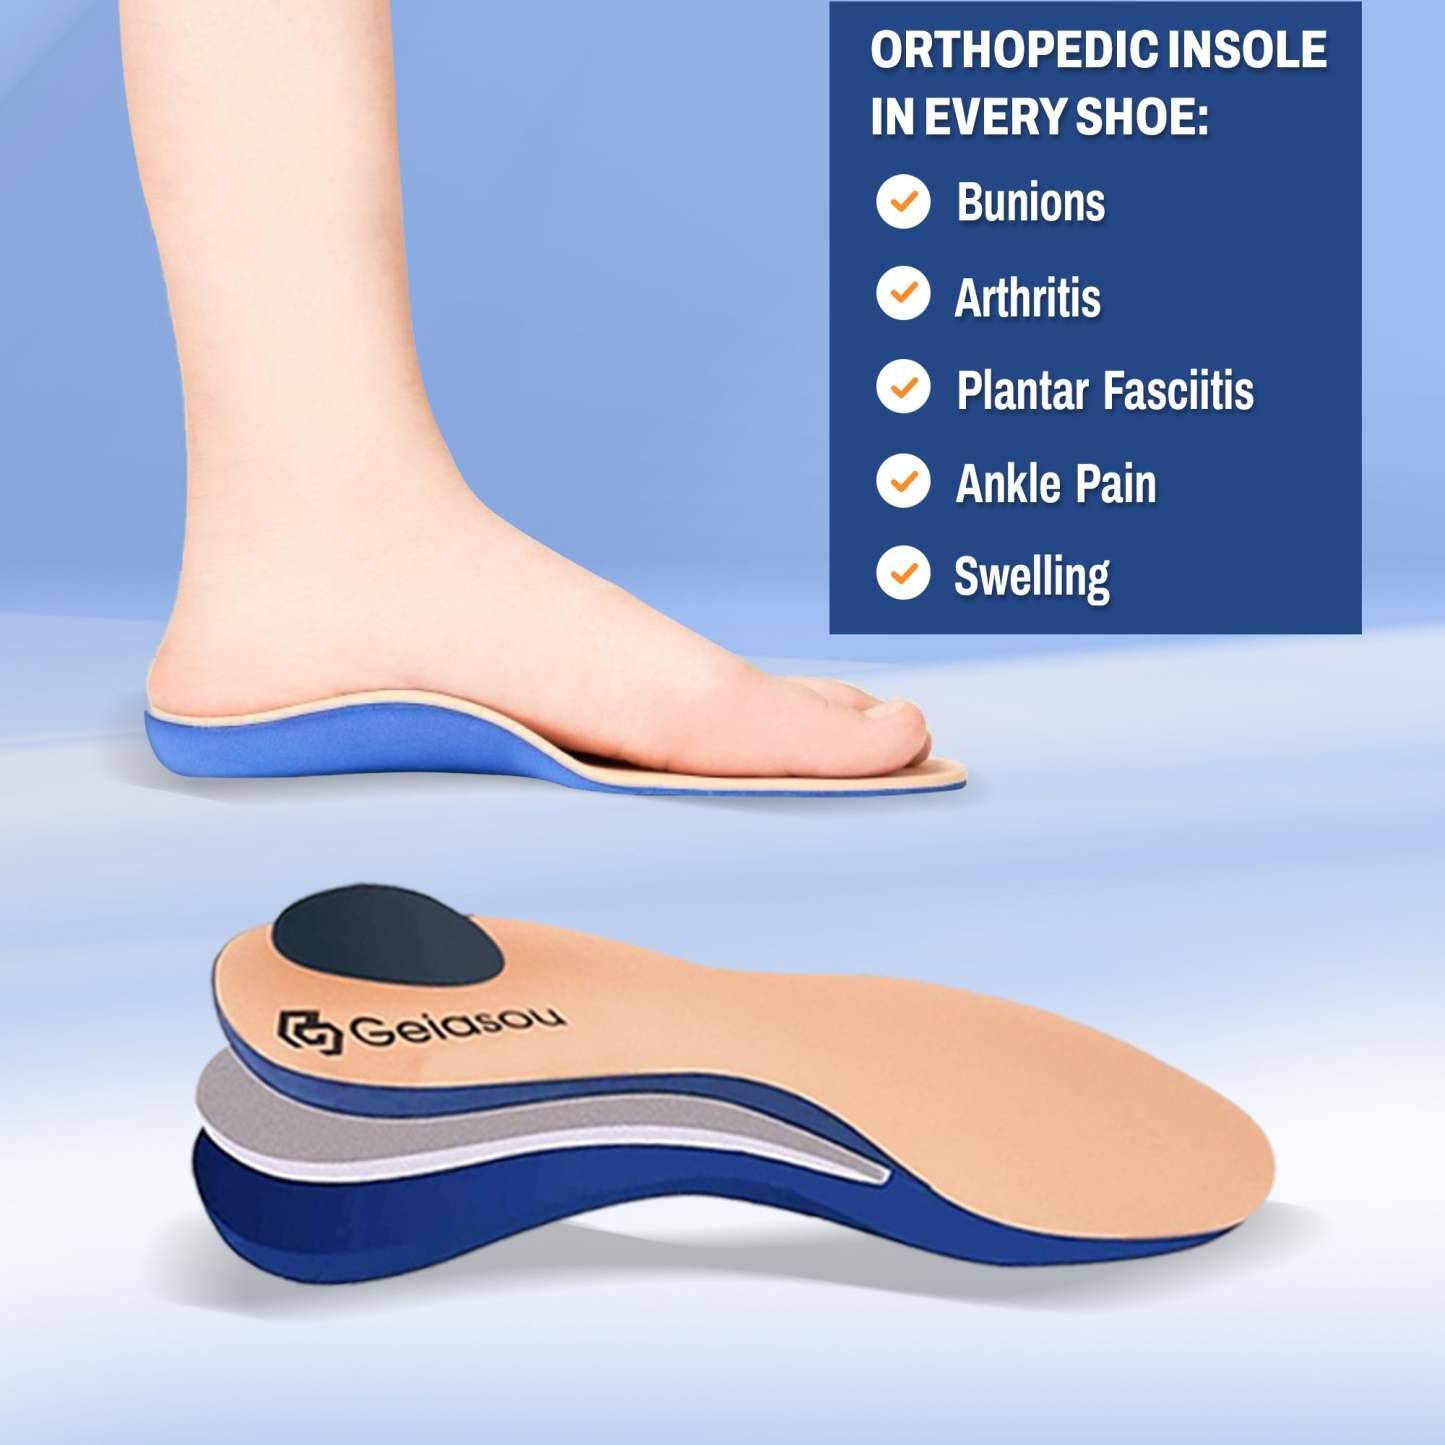 Men Rain Ankle Boots Slip-on Nonskid Orthopedic Shoes